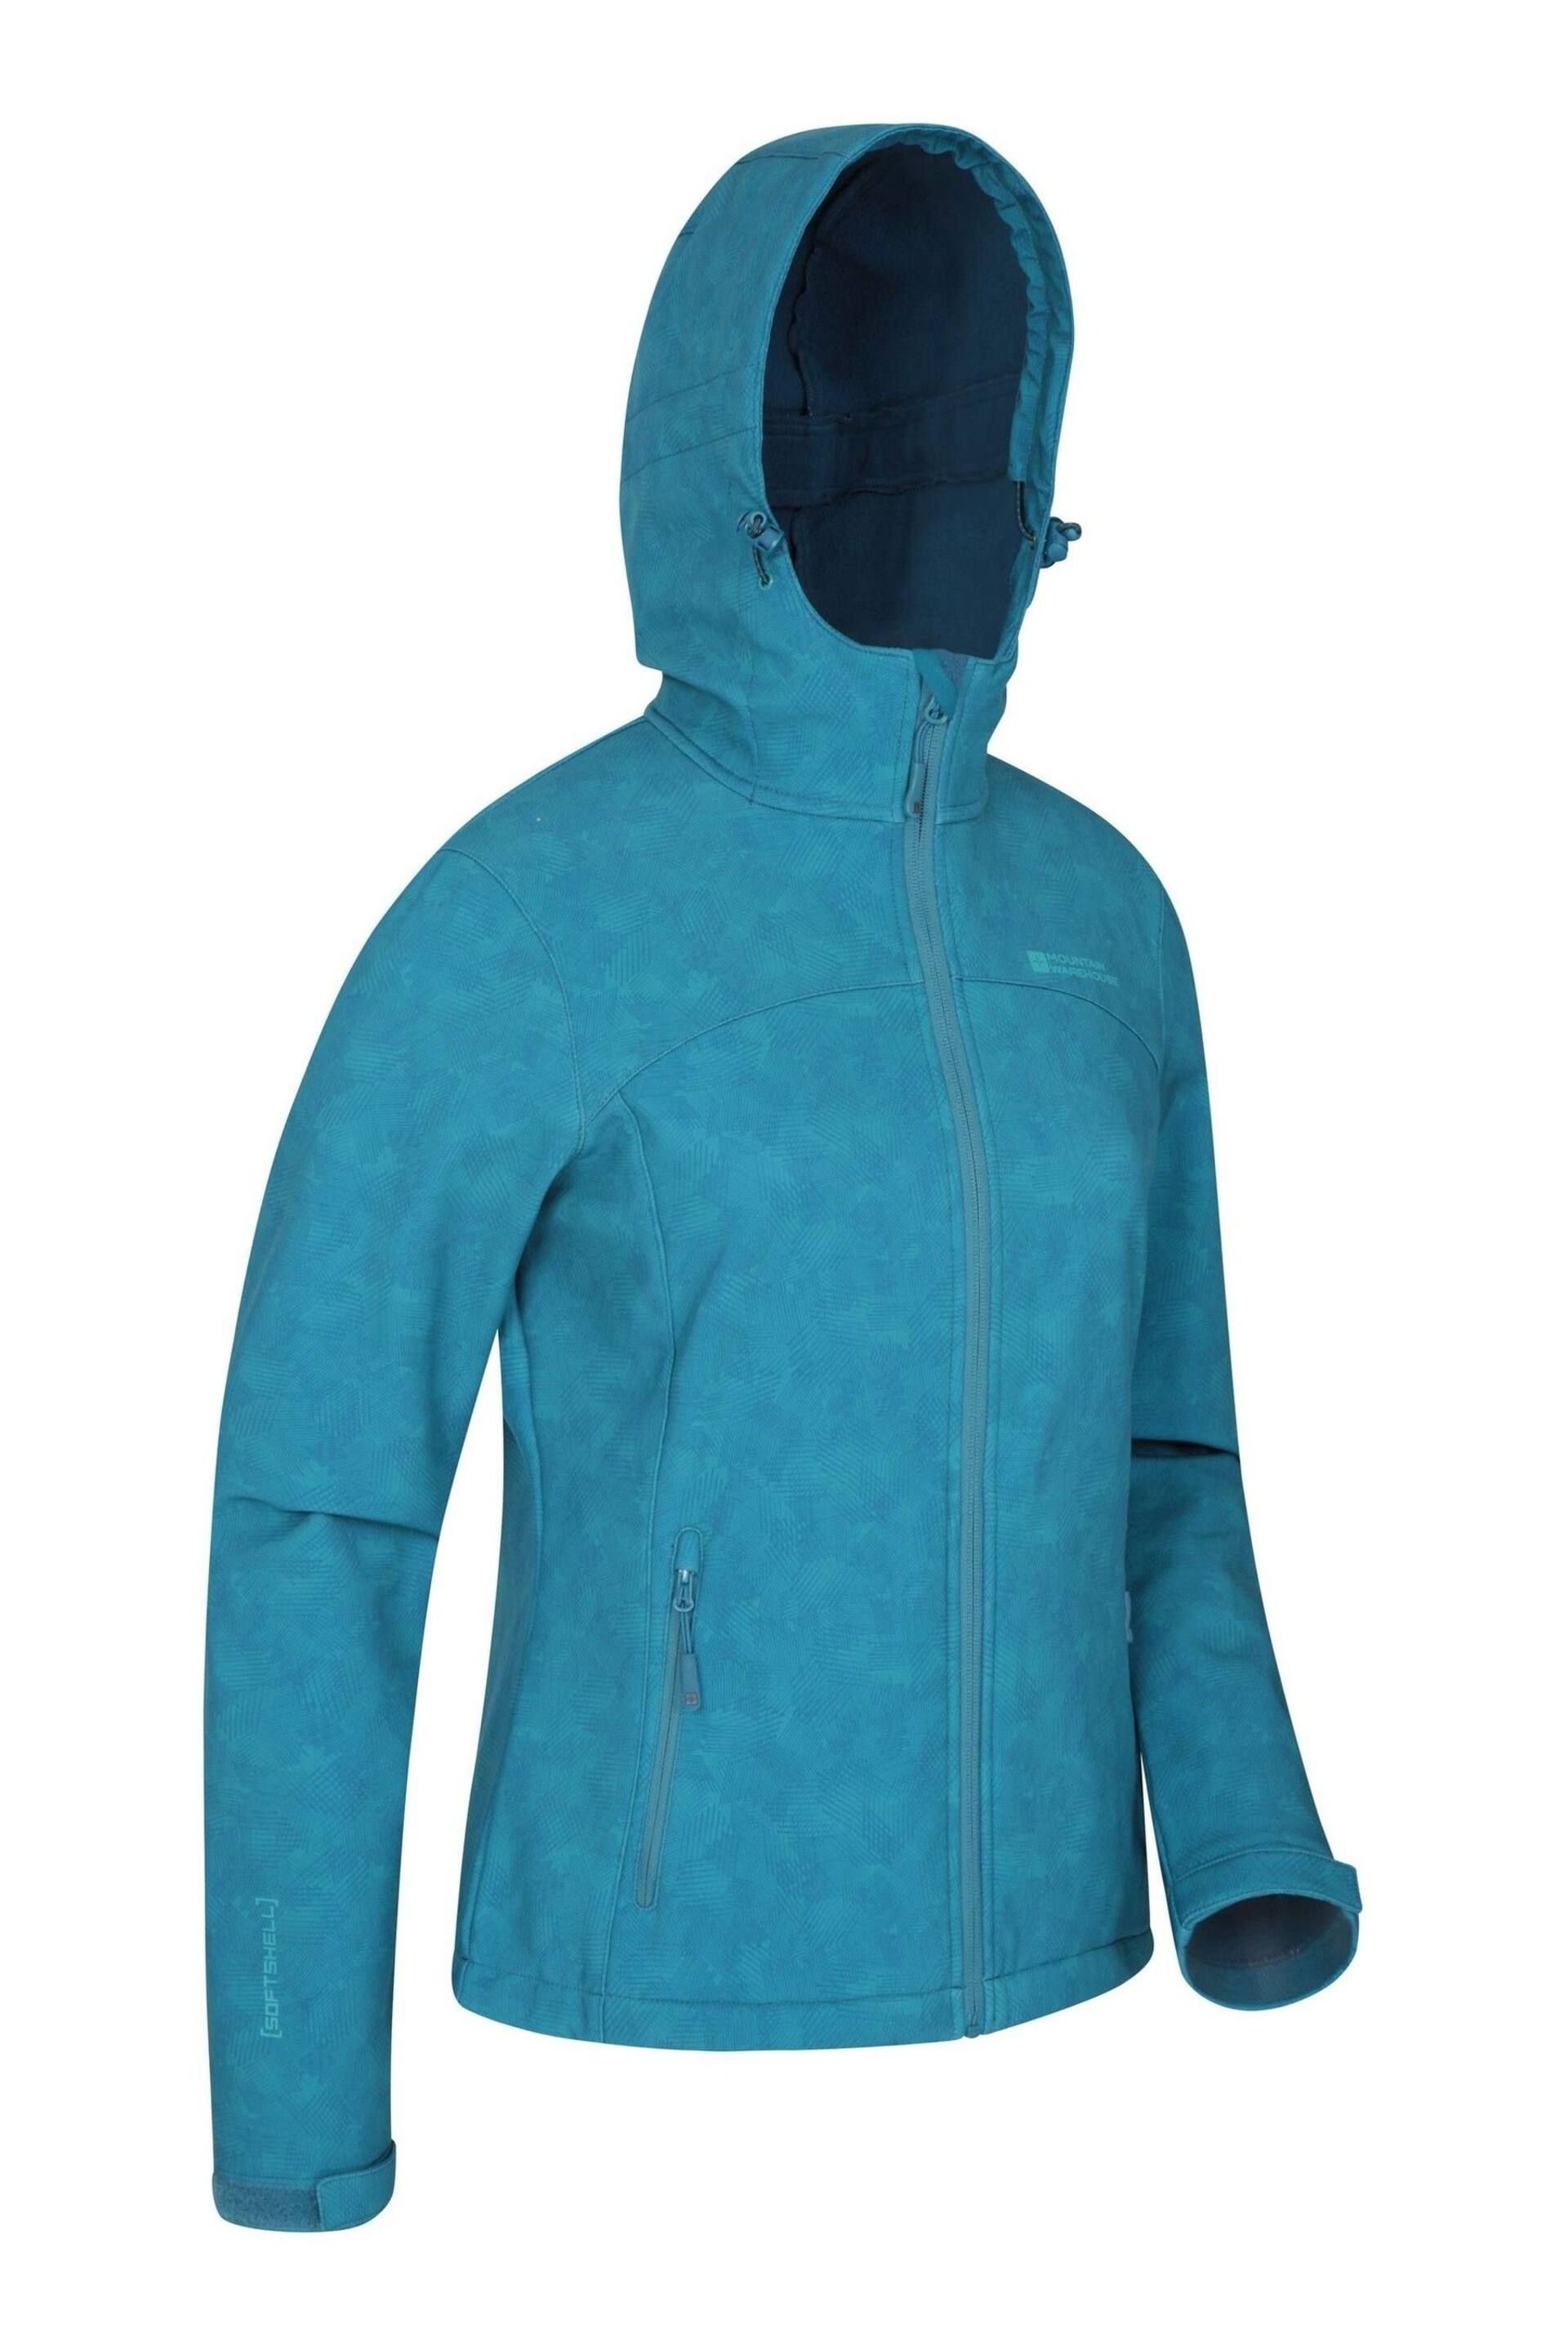 Mountain Warehouse Dark Blue Exodus Womens Softshell Jacket - Image 3 of 4